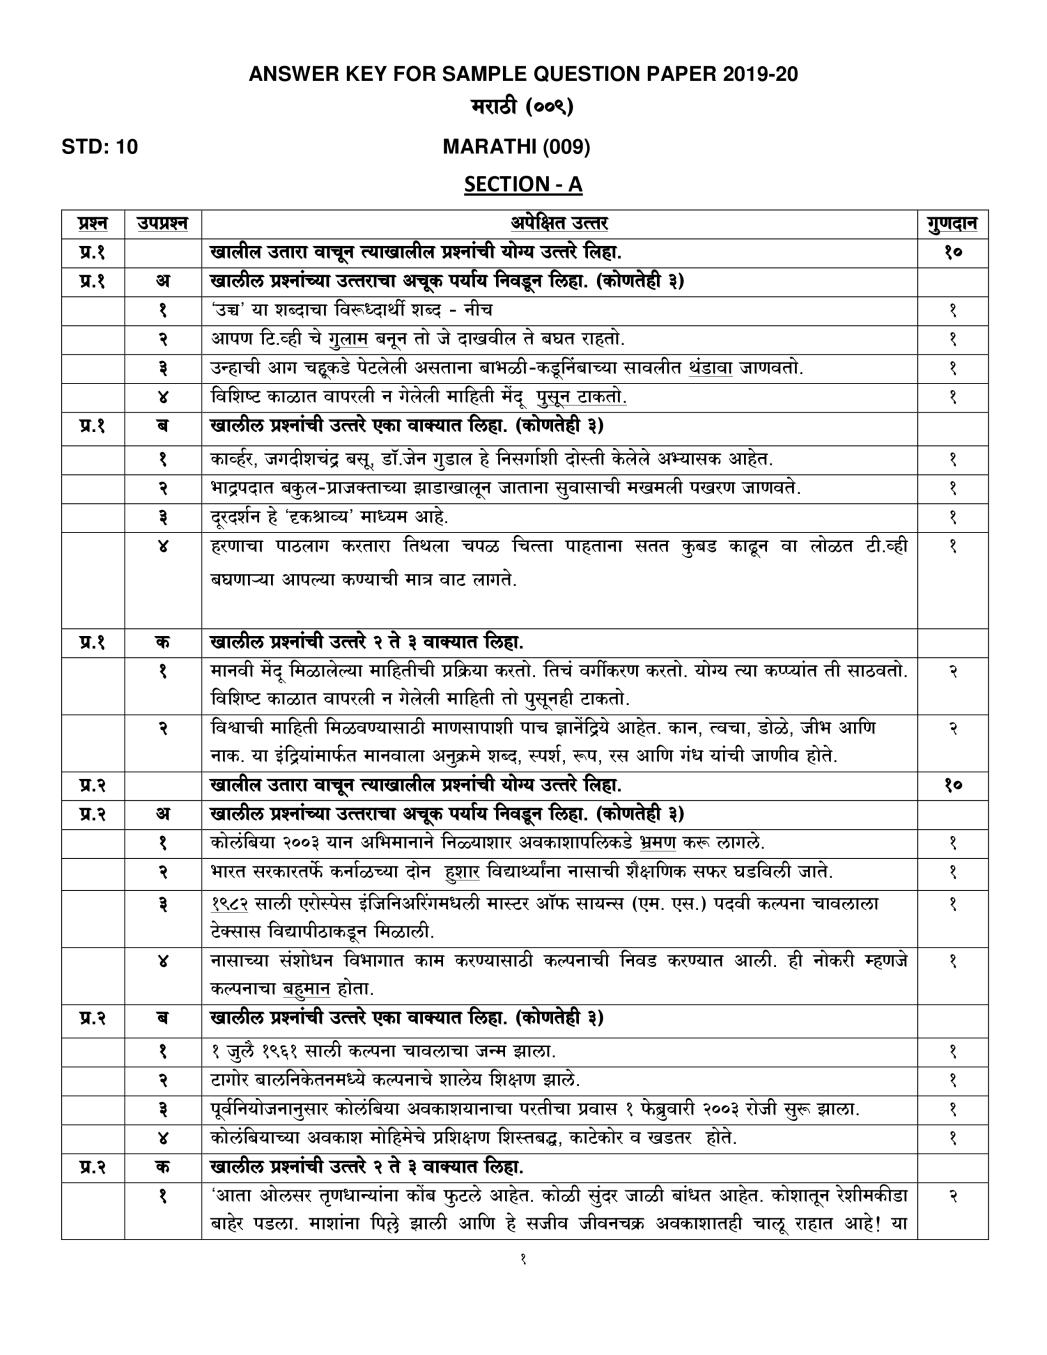 CBSE Class 10 Marking Scheme 2020 for Marathi - Page 1